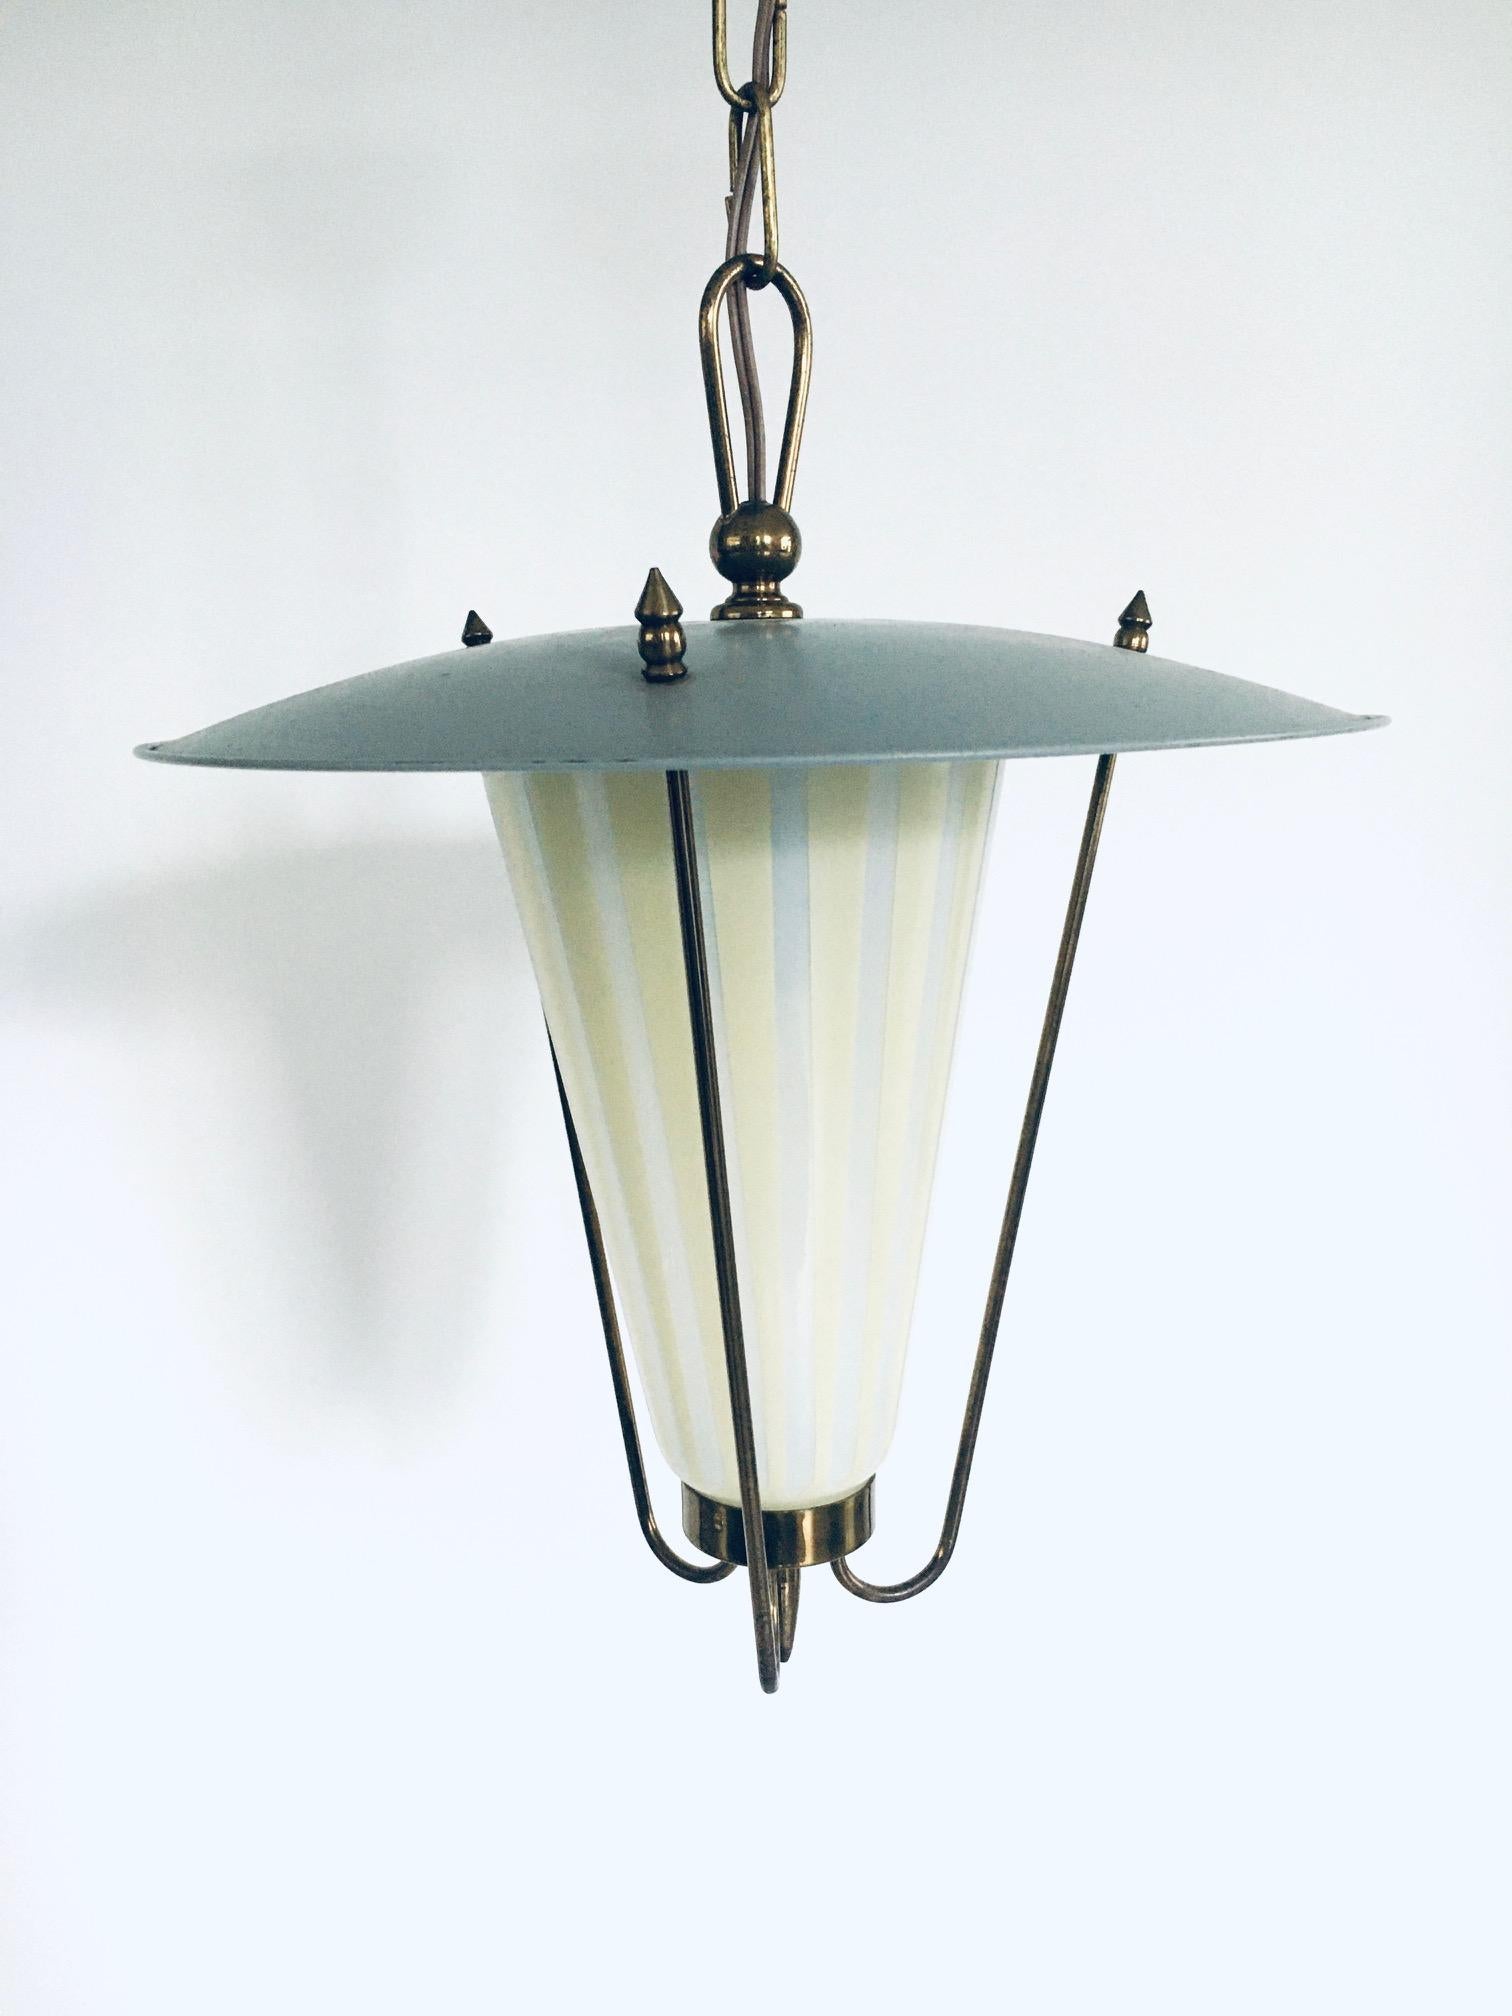 Vintage 1950's Midcentury Modern Atomic Age Design pendant Lantern Hanging Lamp. Fabriqué en France, années 1950. Métal et laiton avec abat-jour en verre 2 couleurs. En très bon état. Dimensions : 39 cm x 32 cm x 32 cm.